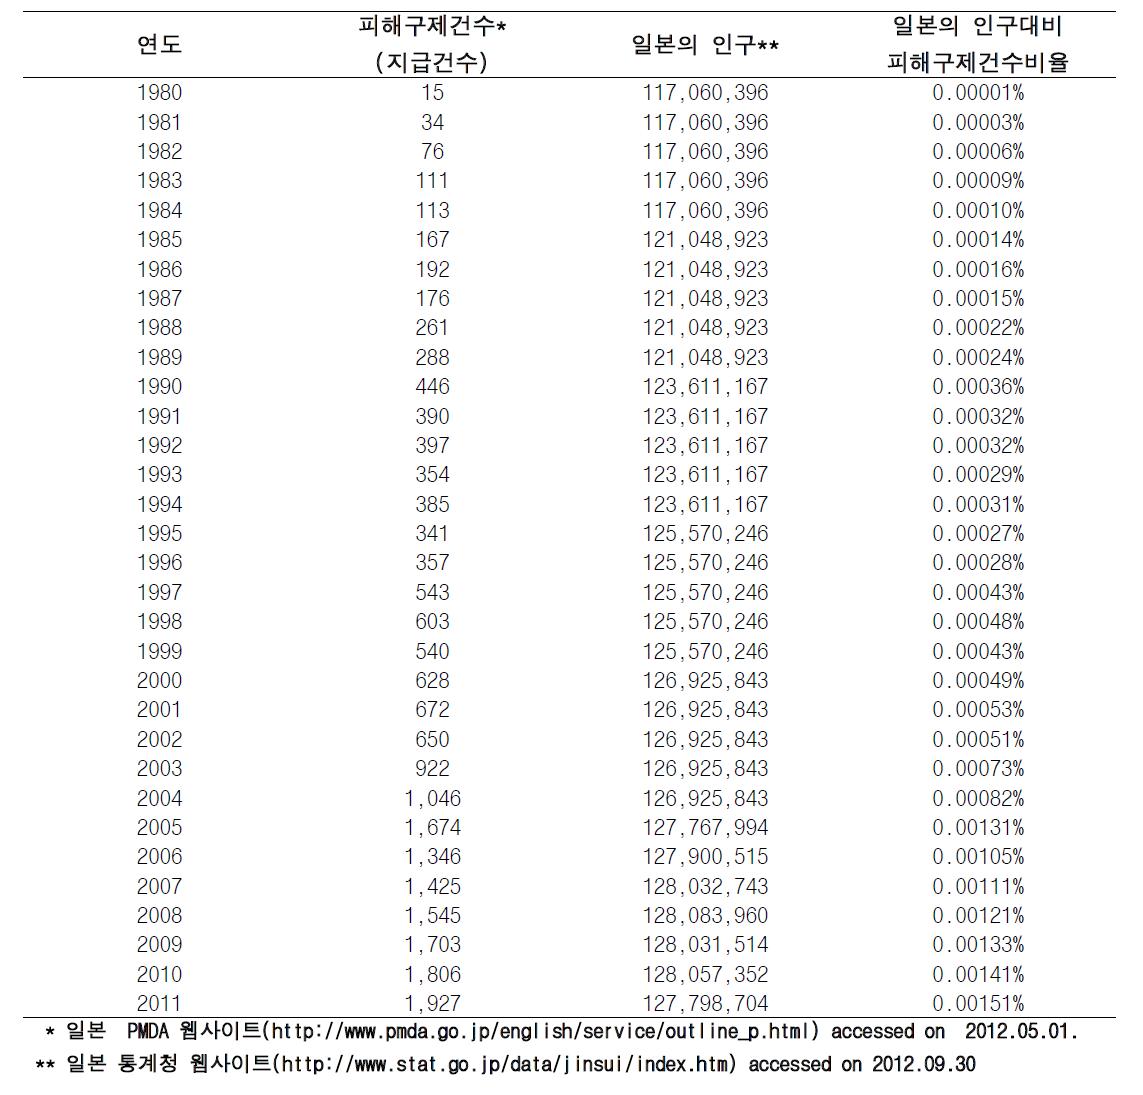 일본의 피해구제건수와 인구대비 피해구제건수비율